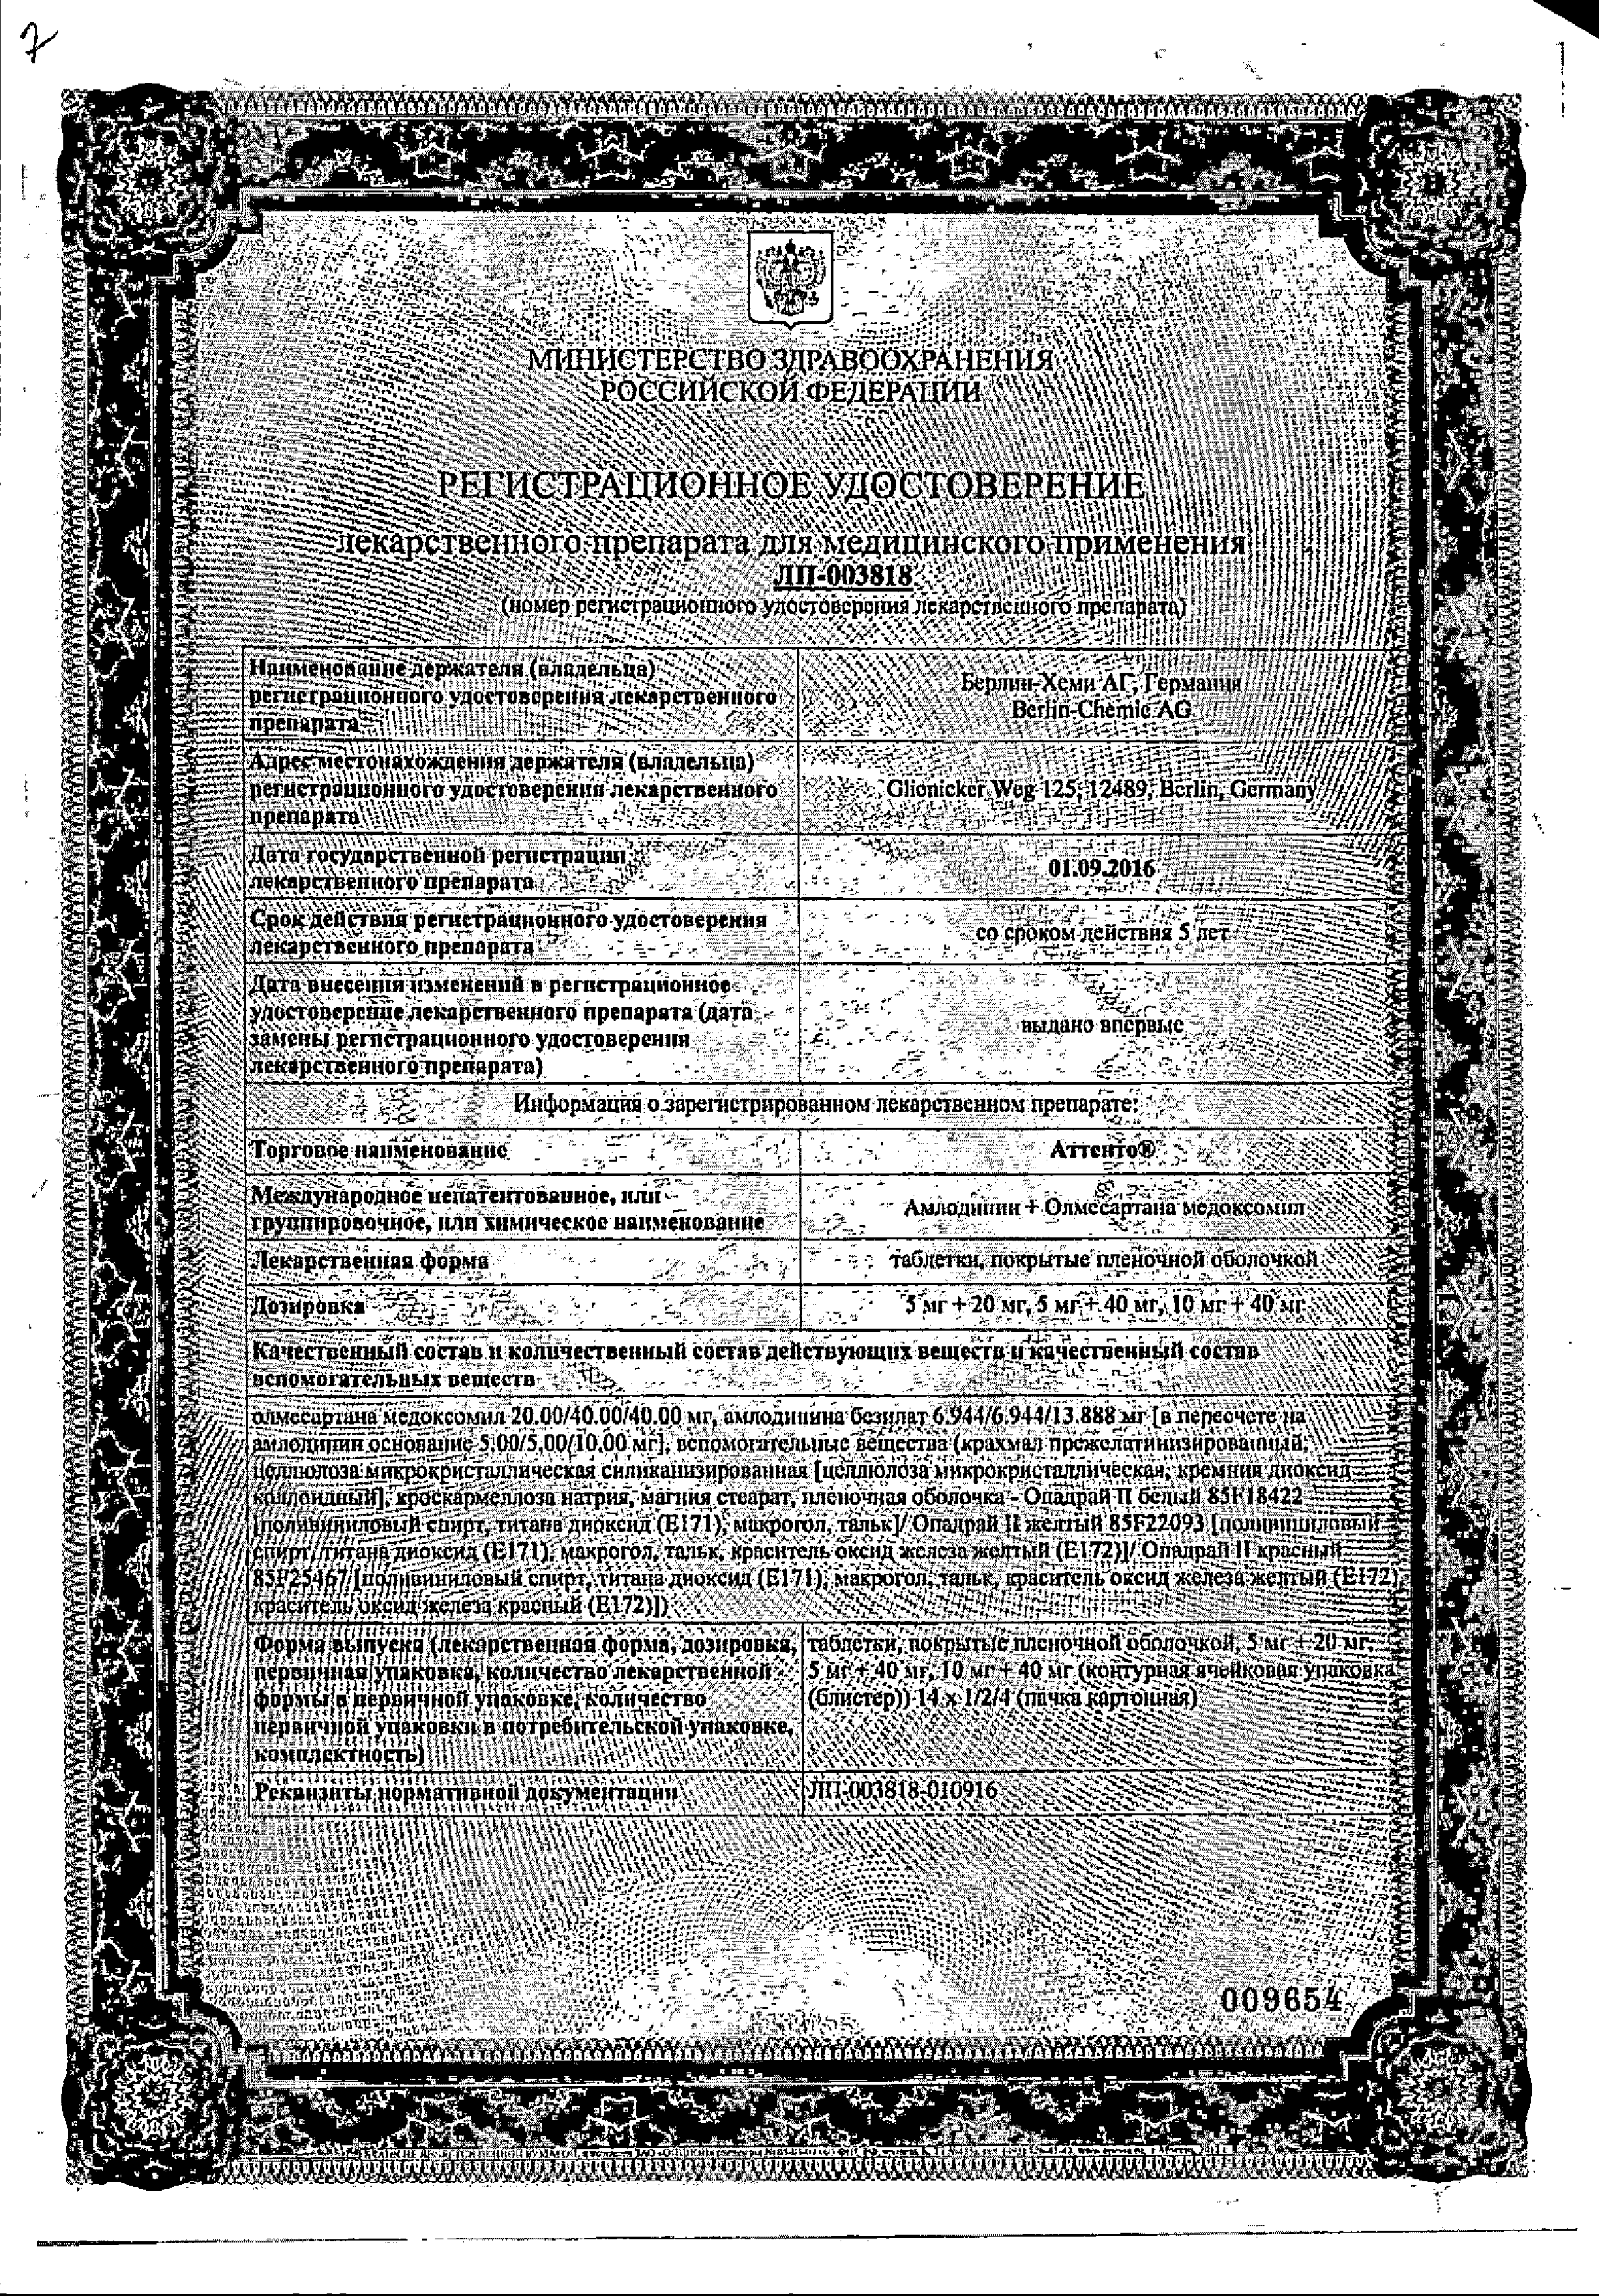 Аттенто сертификат